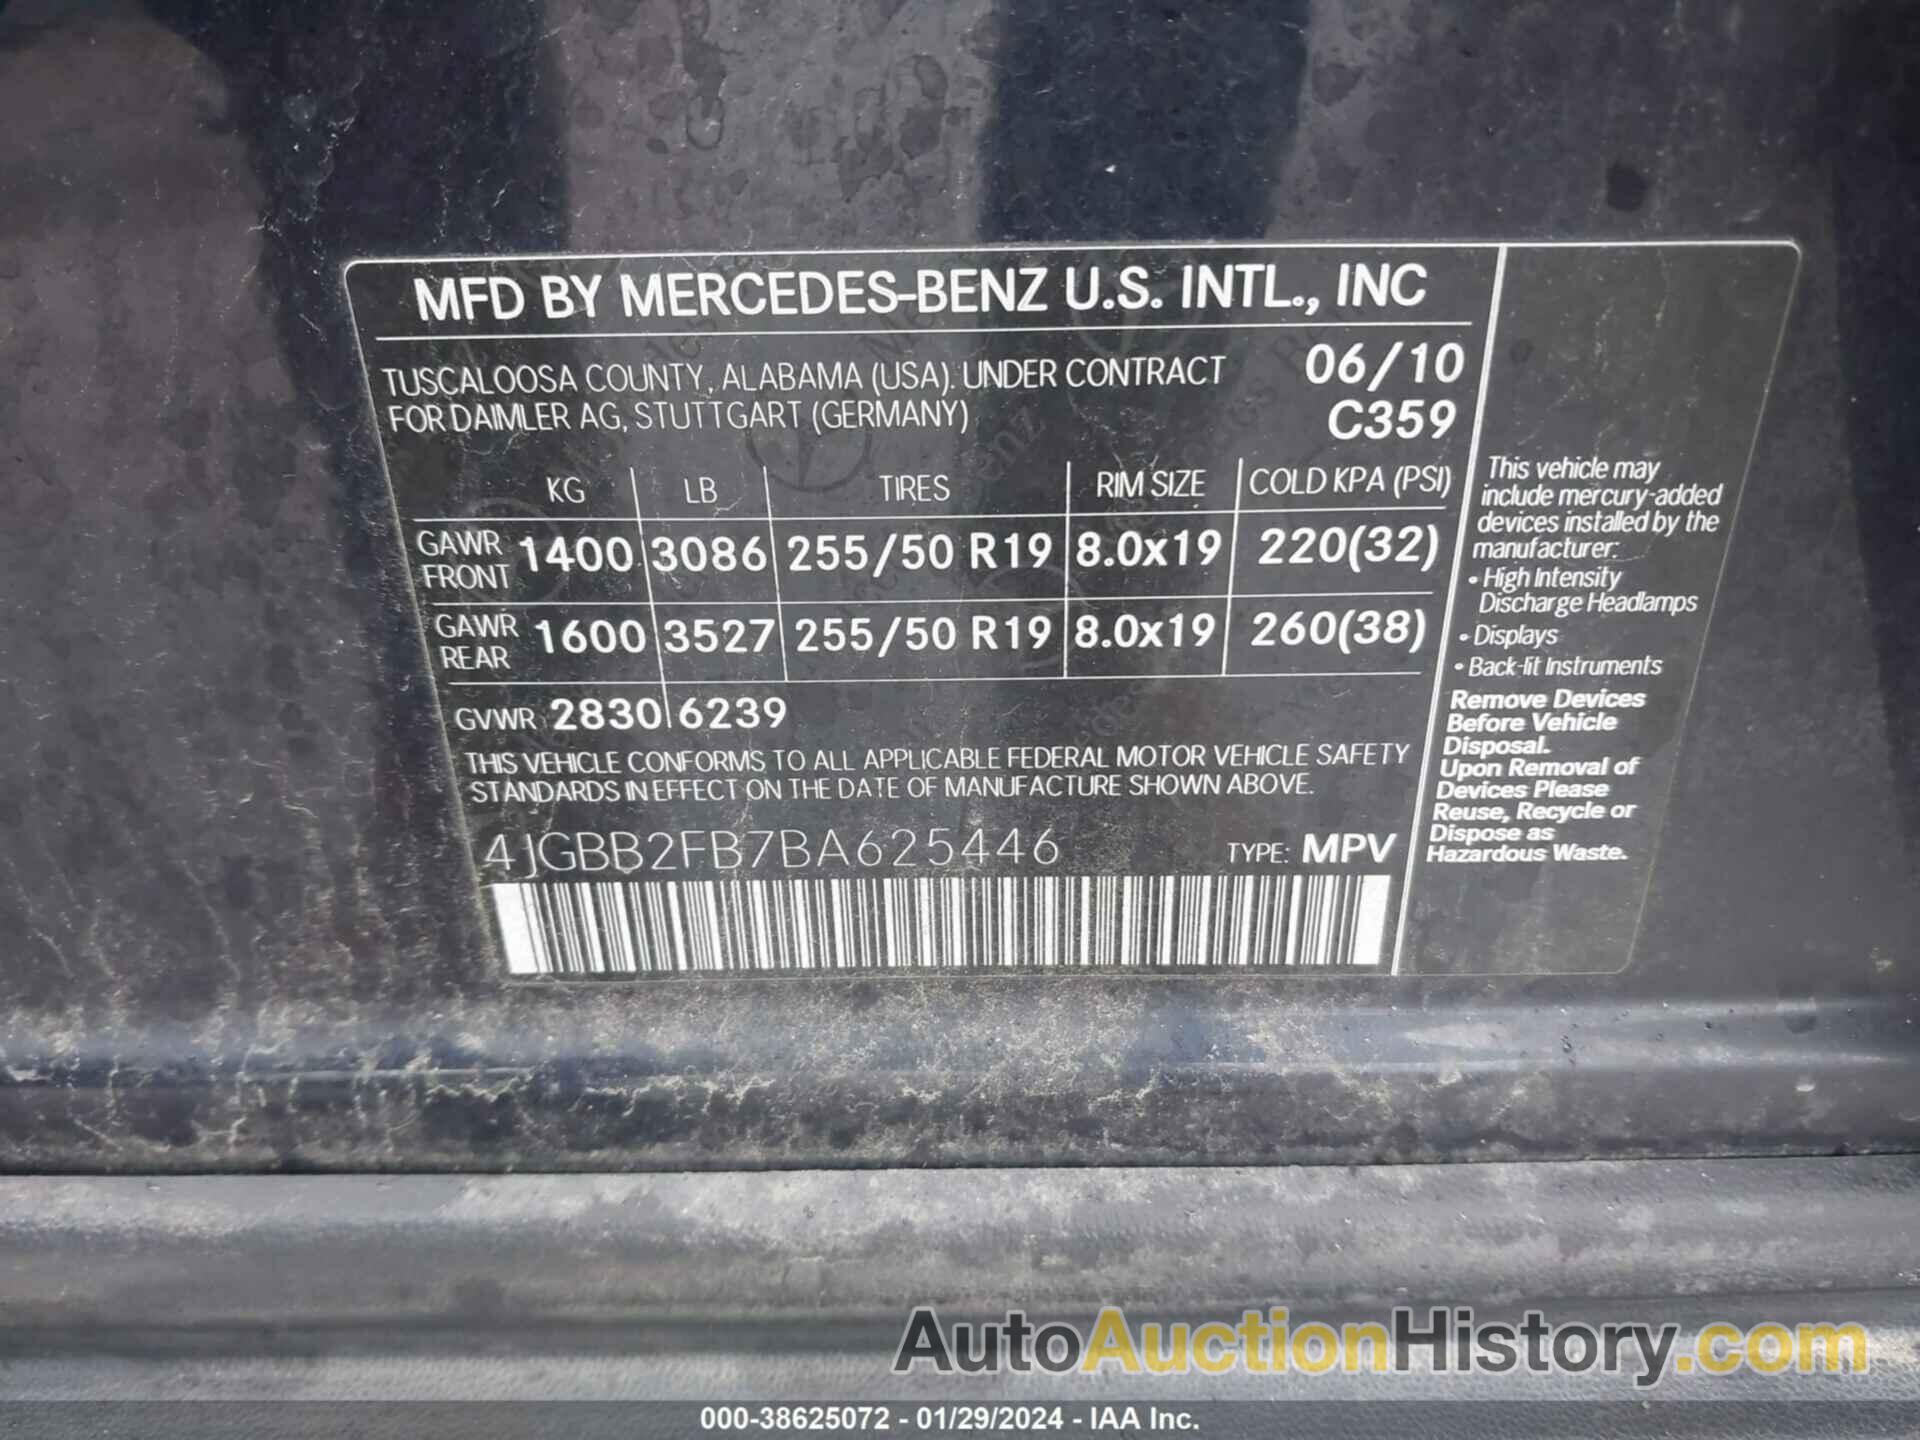 MERCEDES-BENZ ML 350 BLUETEC 4MATIC, 4JGBB2FB7BA625446